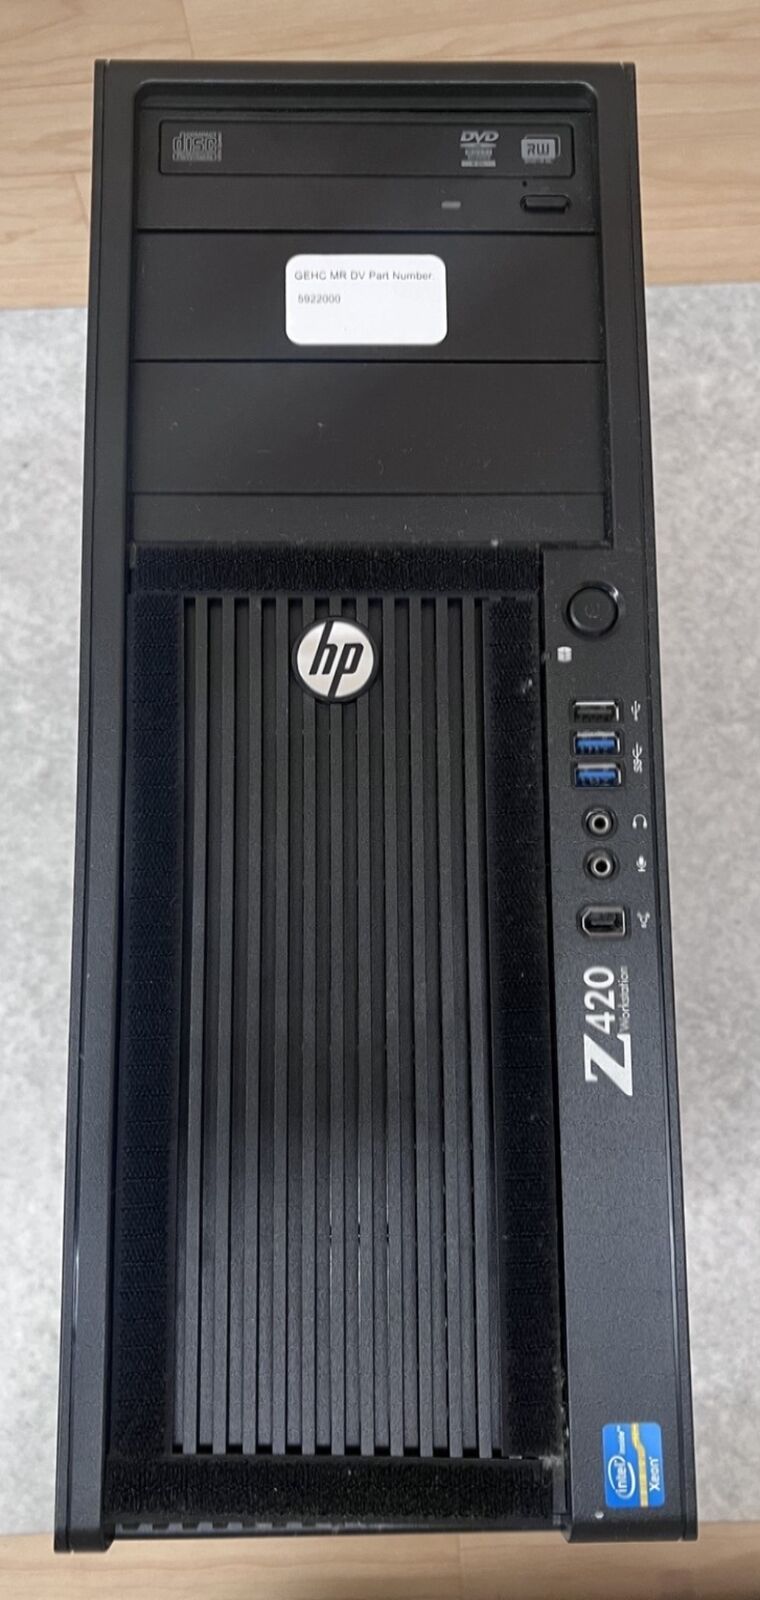 HP Z420 Workstation Xeon E5-1620 3.60GHz 32GB RAM 2x Nvidia Quadro K600 READ